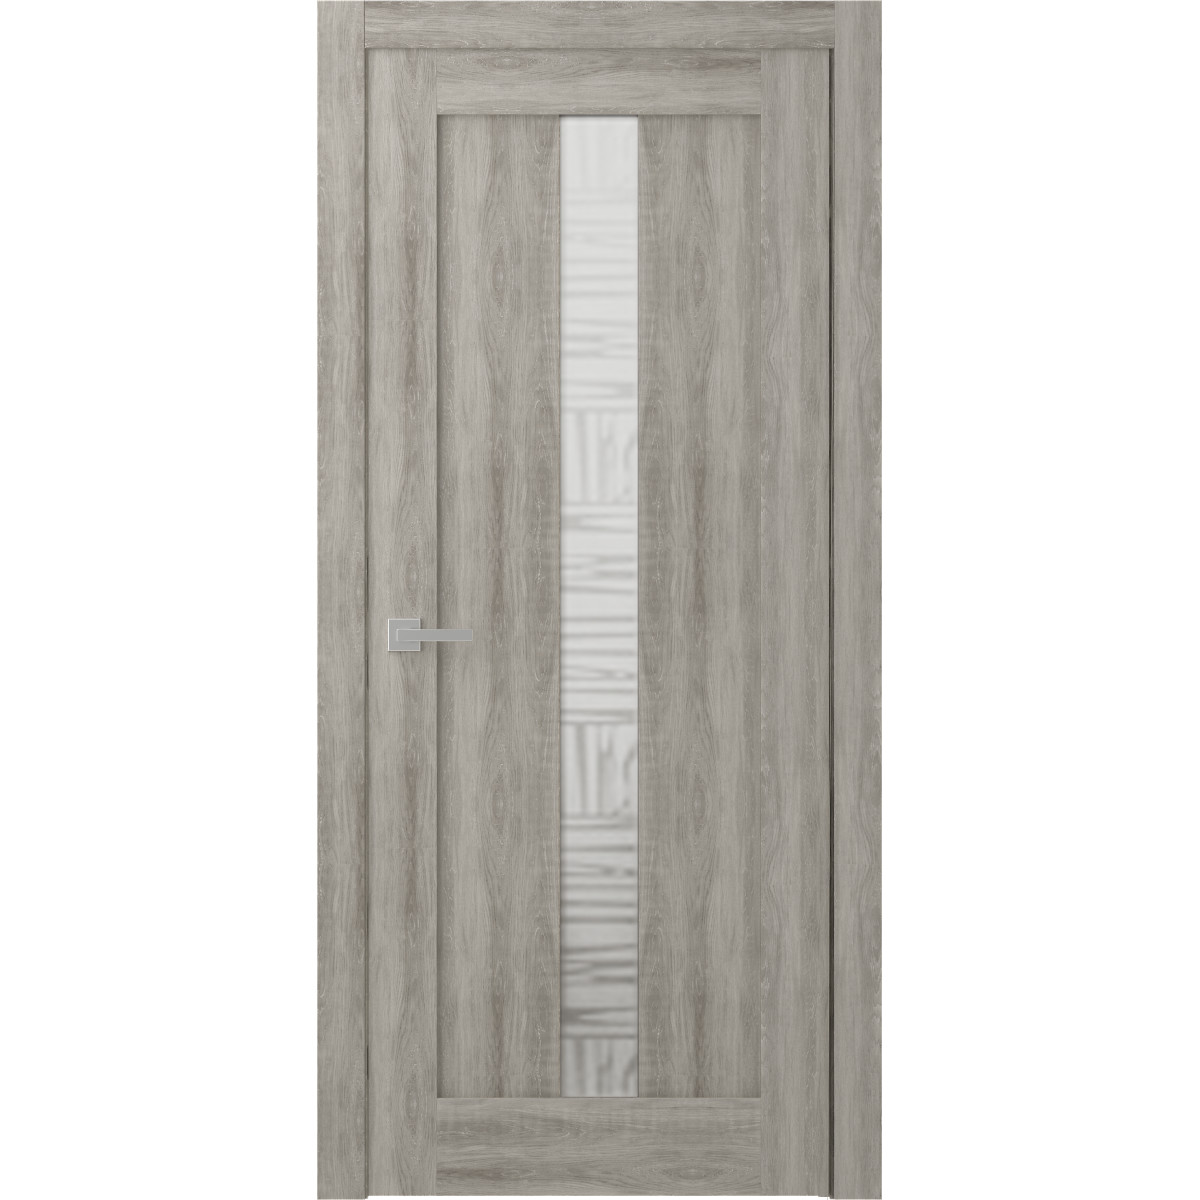 Дверь межкомнатная остеклённая Челси 60x200 см, экошпон, цвет дуб пепельный